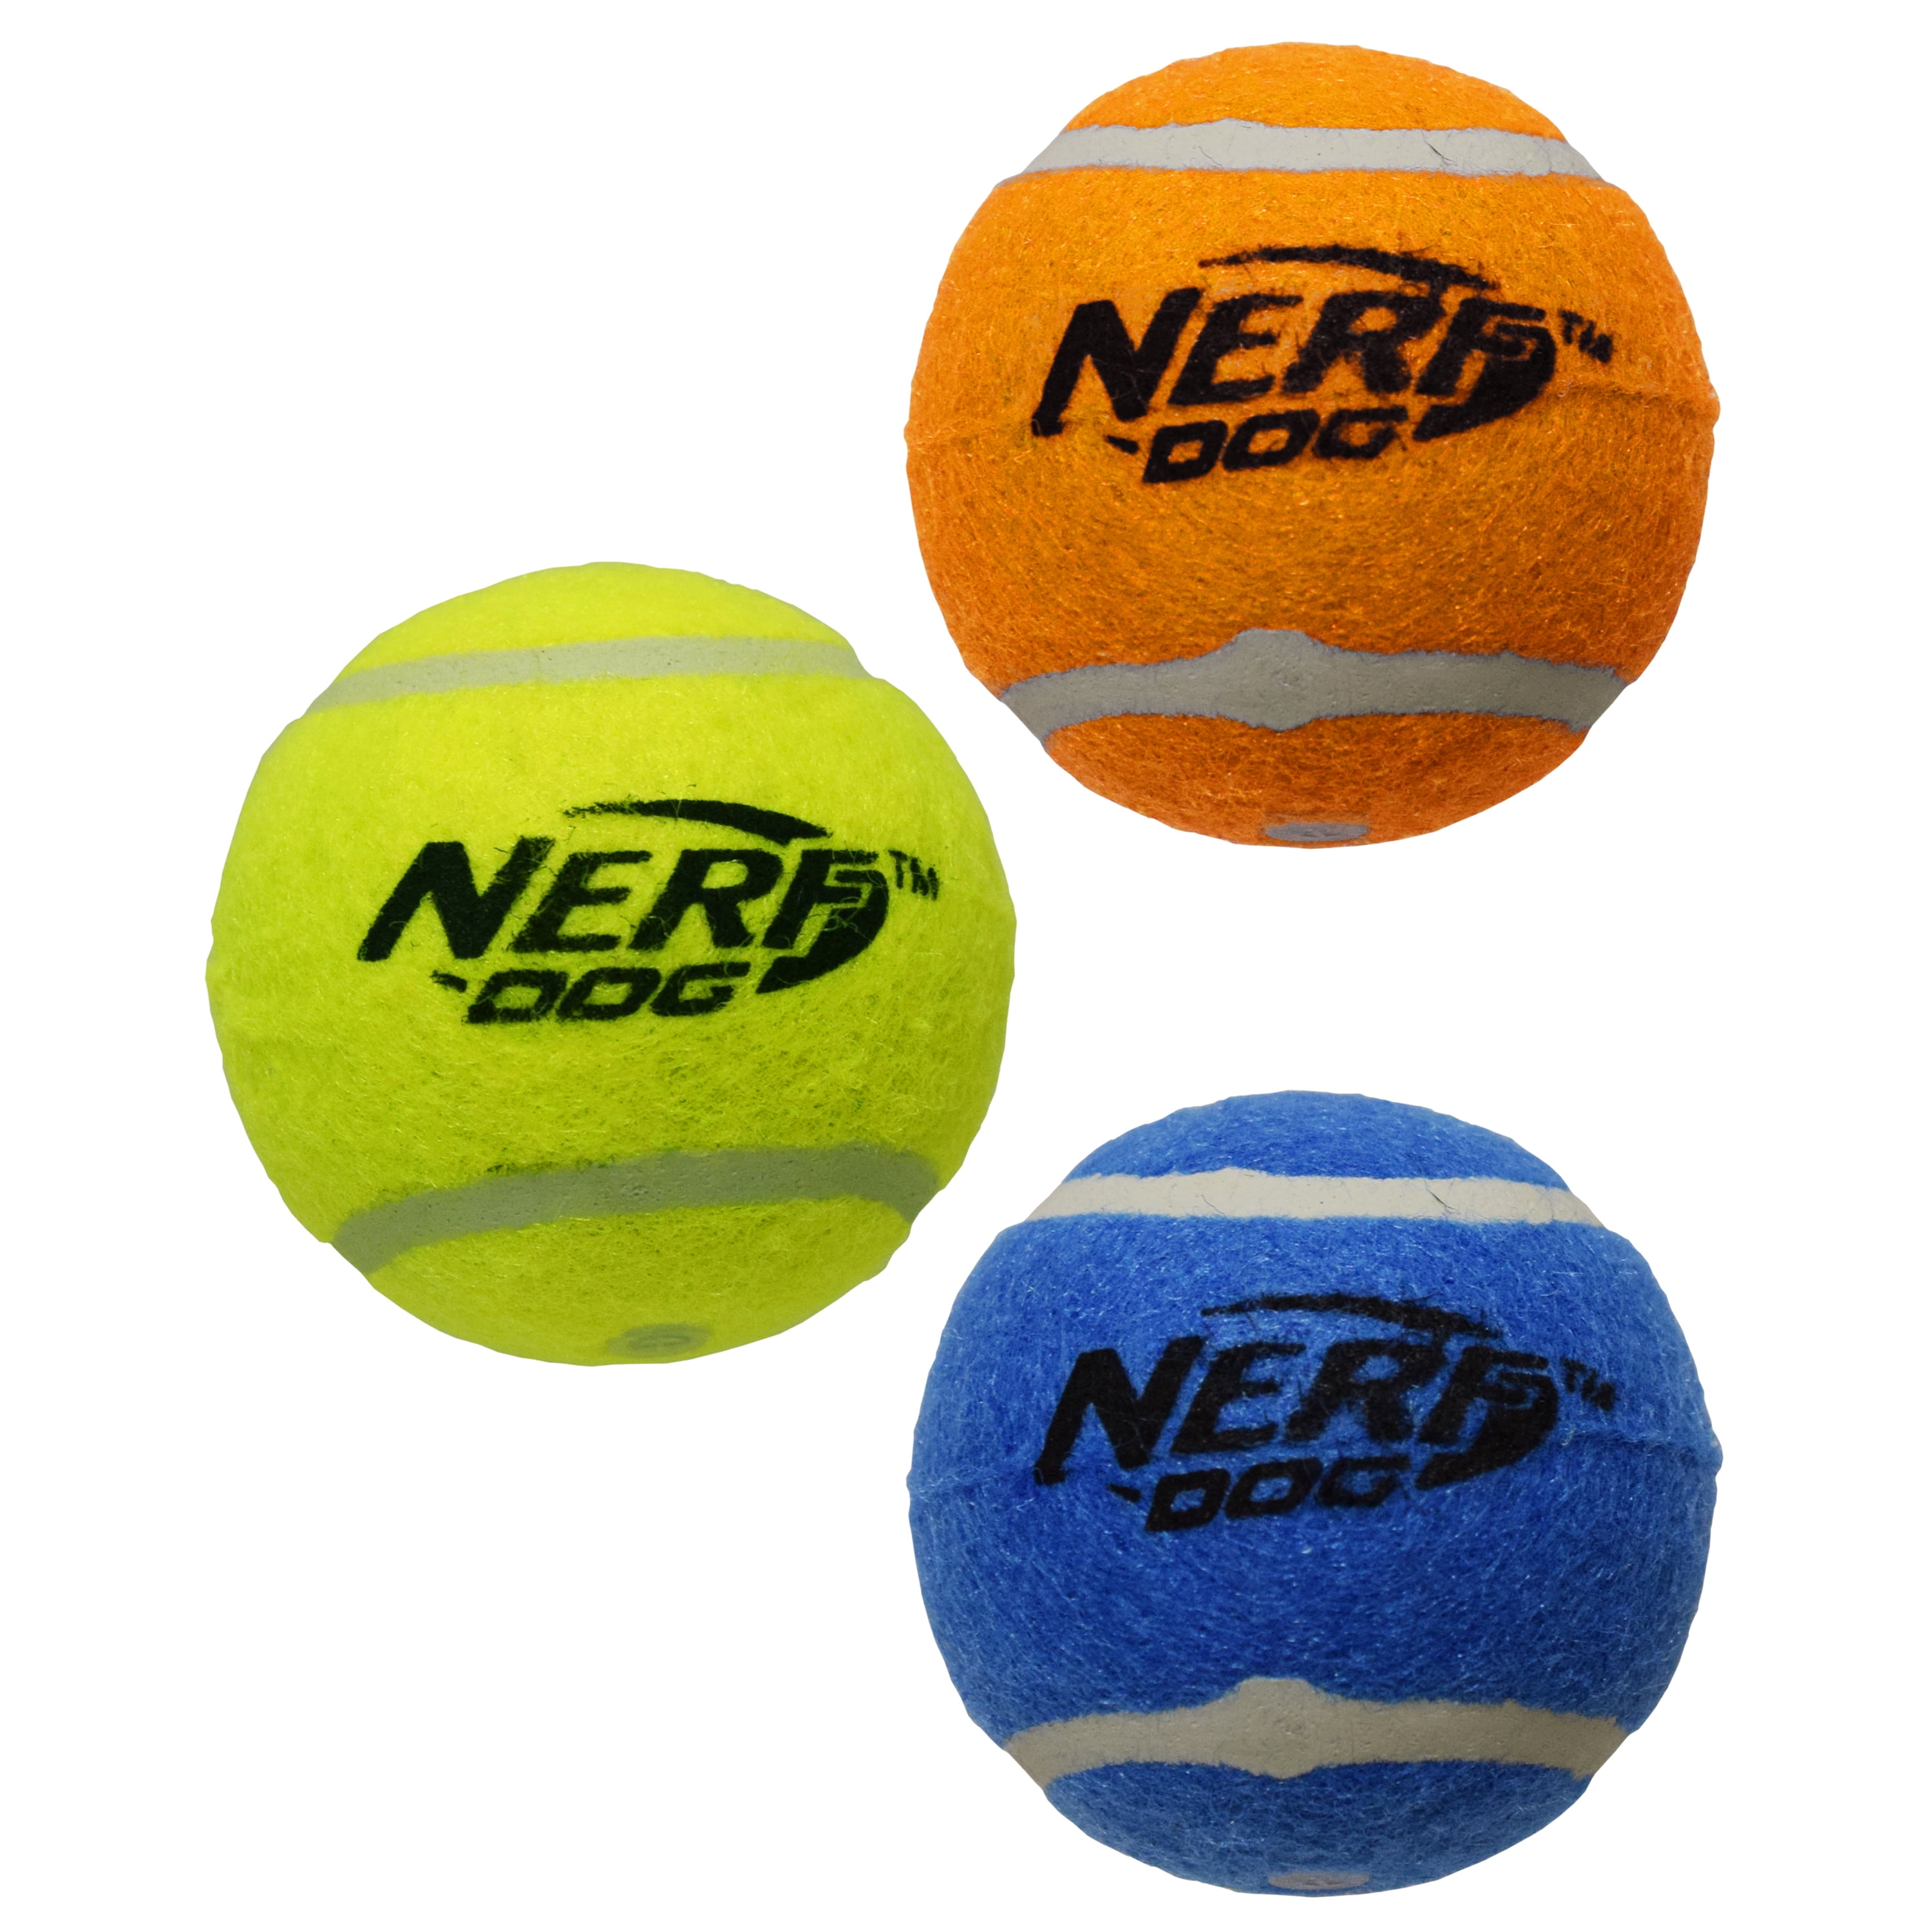 Nerf Dog 12in Blaster w/o Ball Clip 3 2in Squeak Tennis Balls